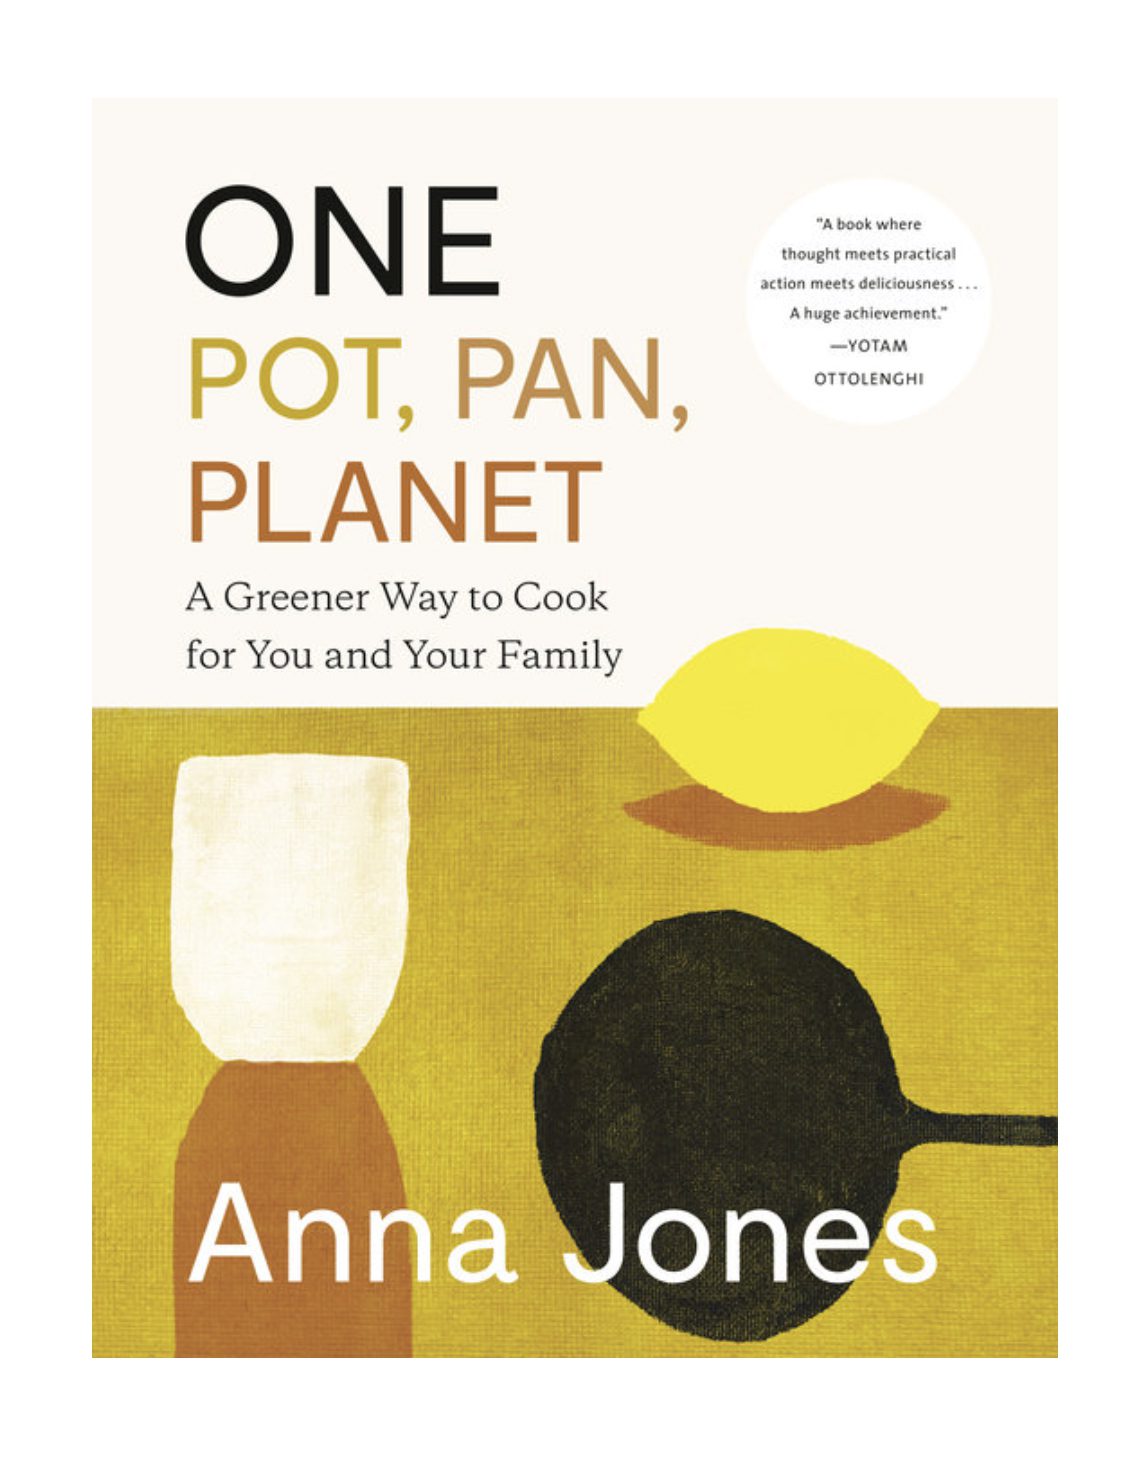 Favorite cookbooks: One: Pots, Pans, Planets